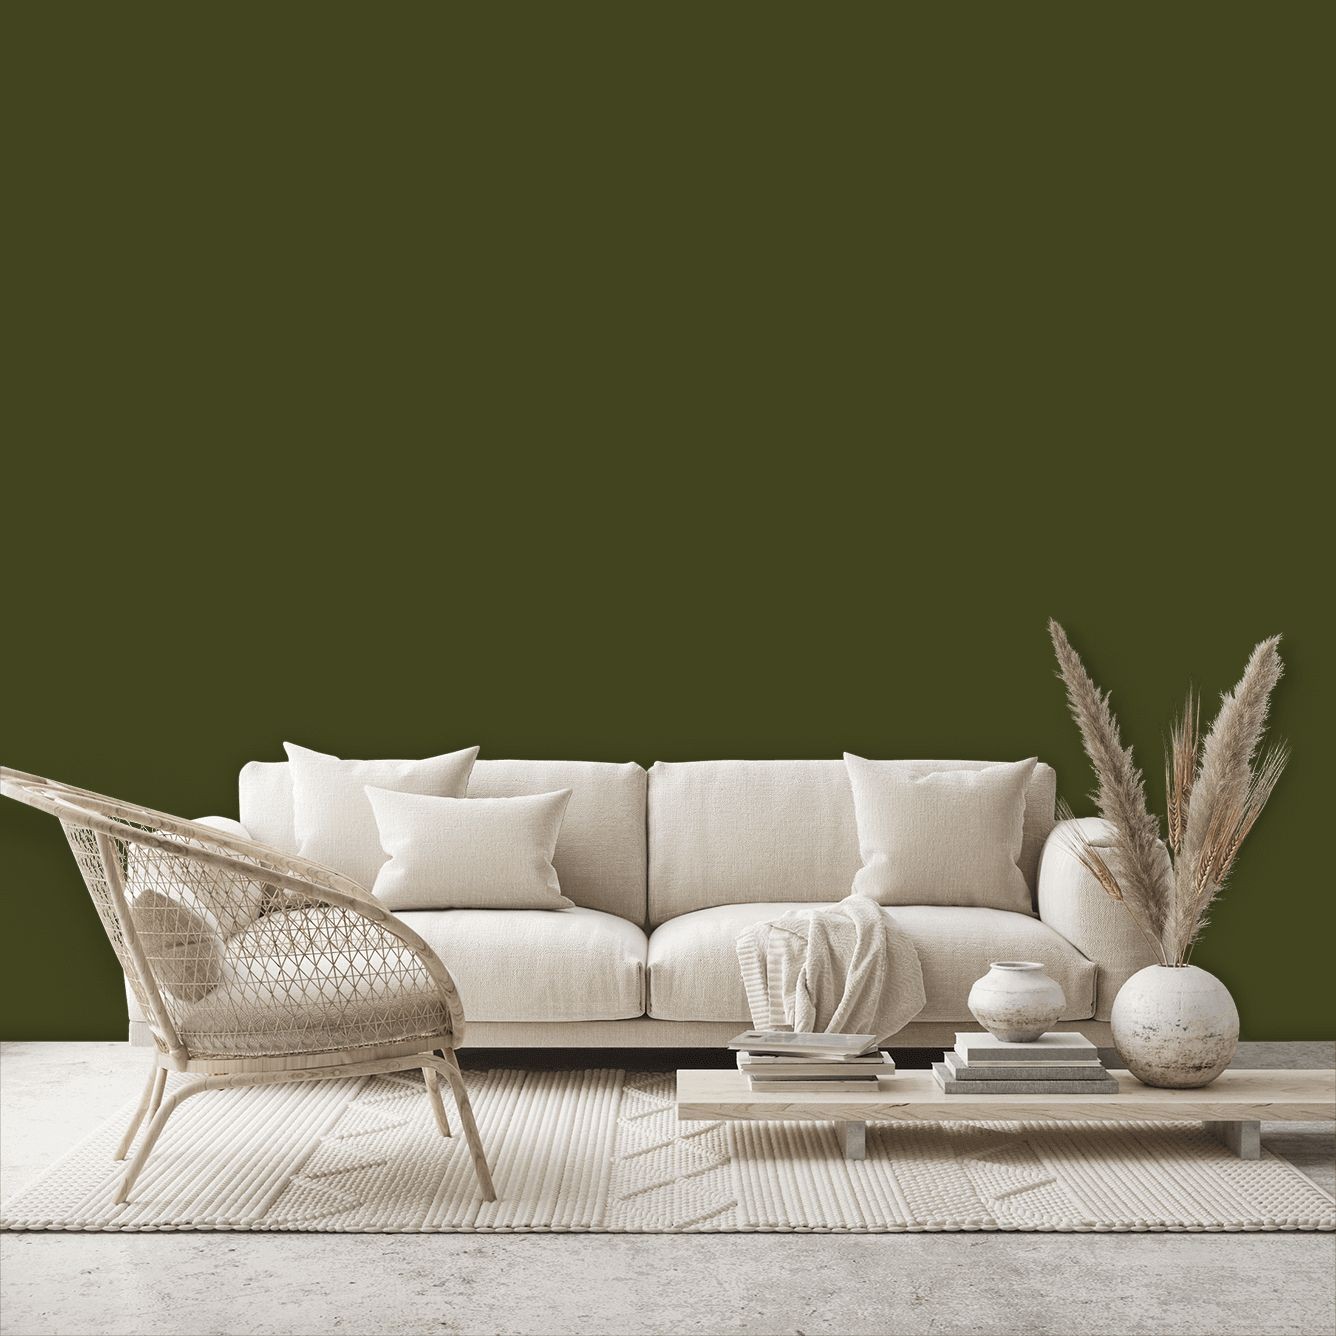 Olive Colour™ | Little Greene Paint Colors